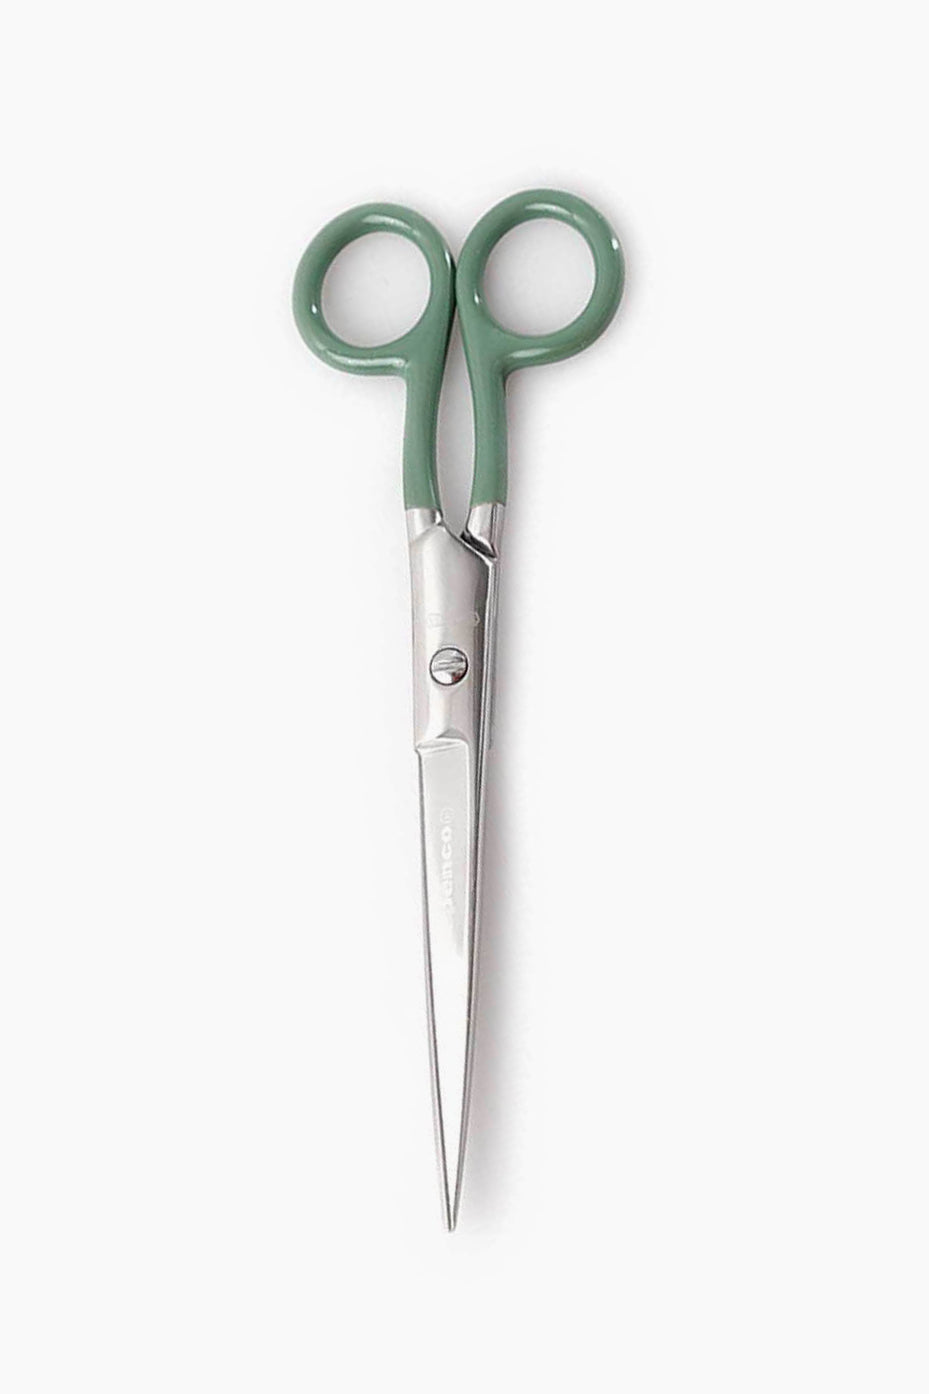 Stainless scissors large green-Penco-KIOSK48TH